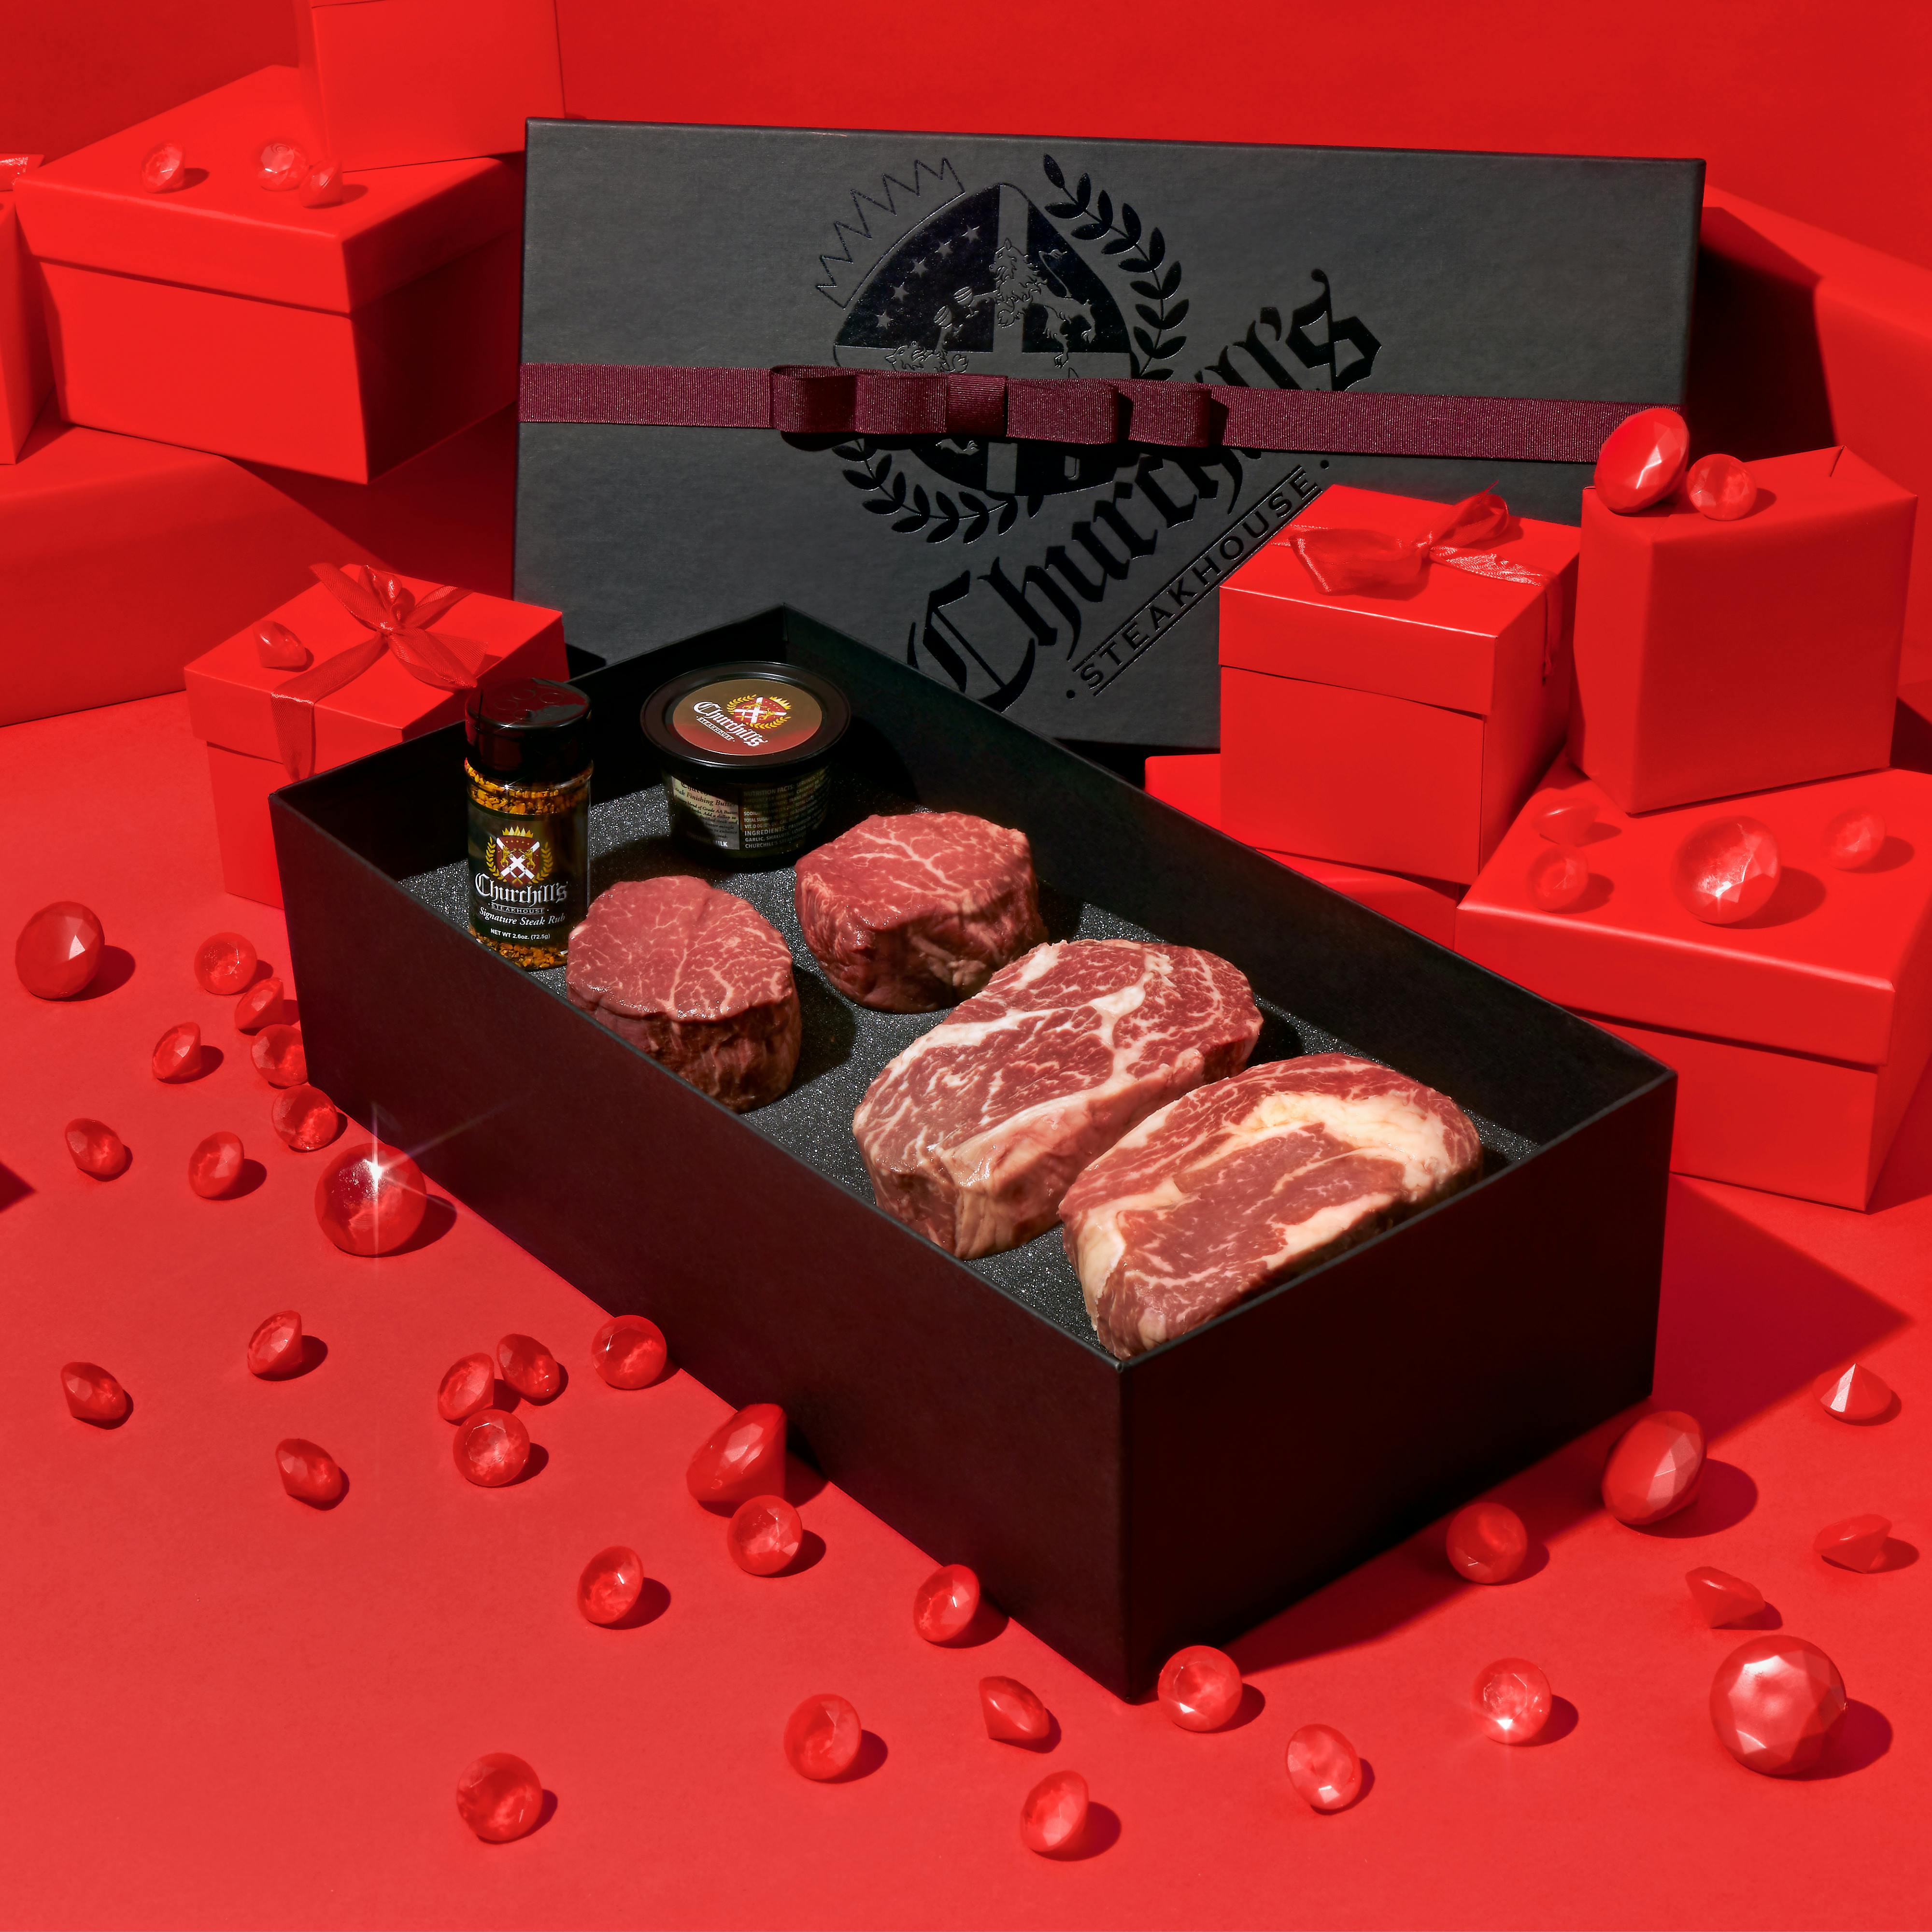 Steakhouse Seasonings Gift Box, Steak Gift Set, Steak Spices 